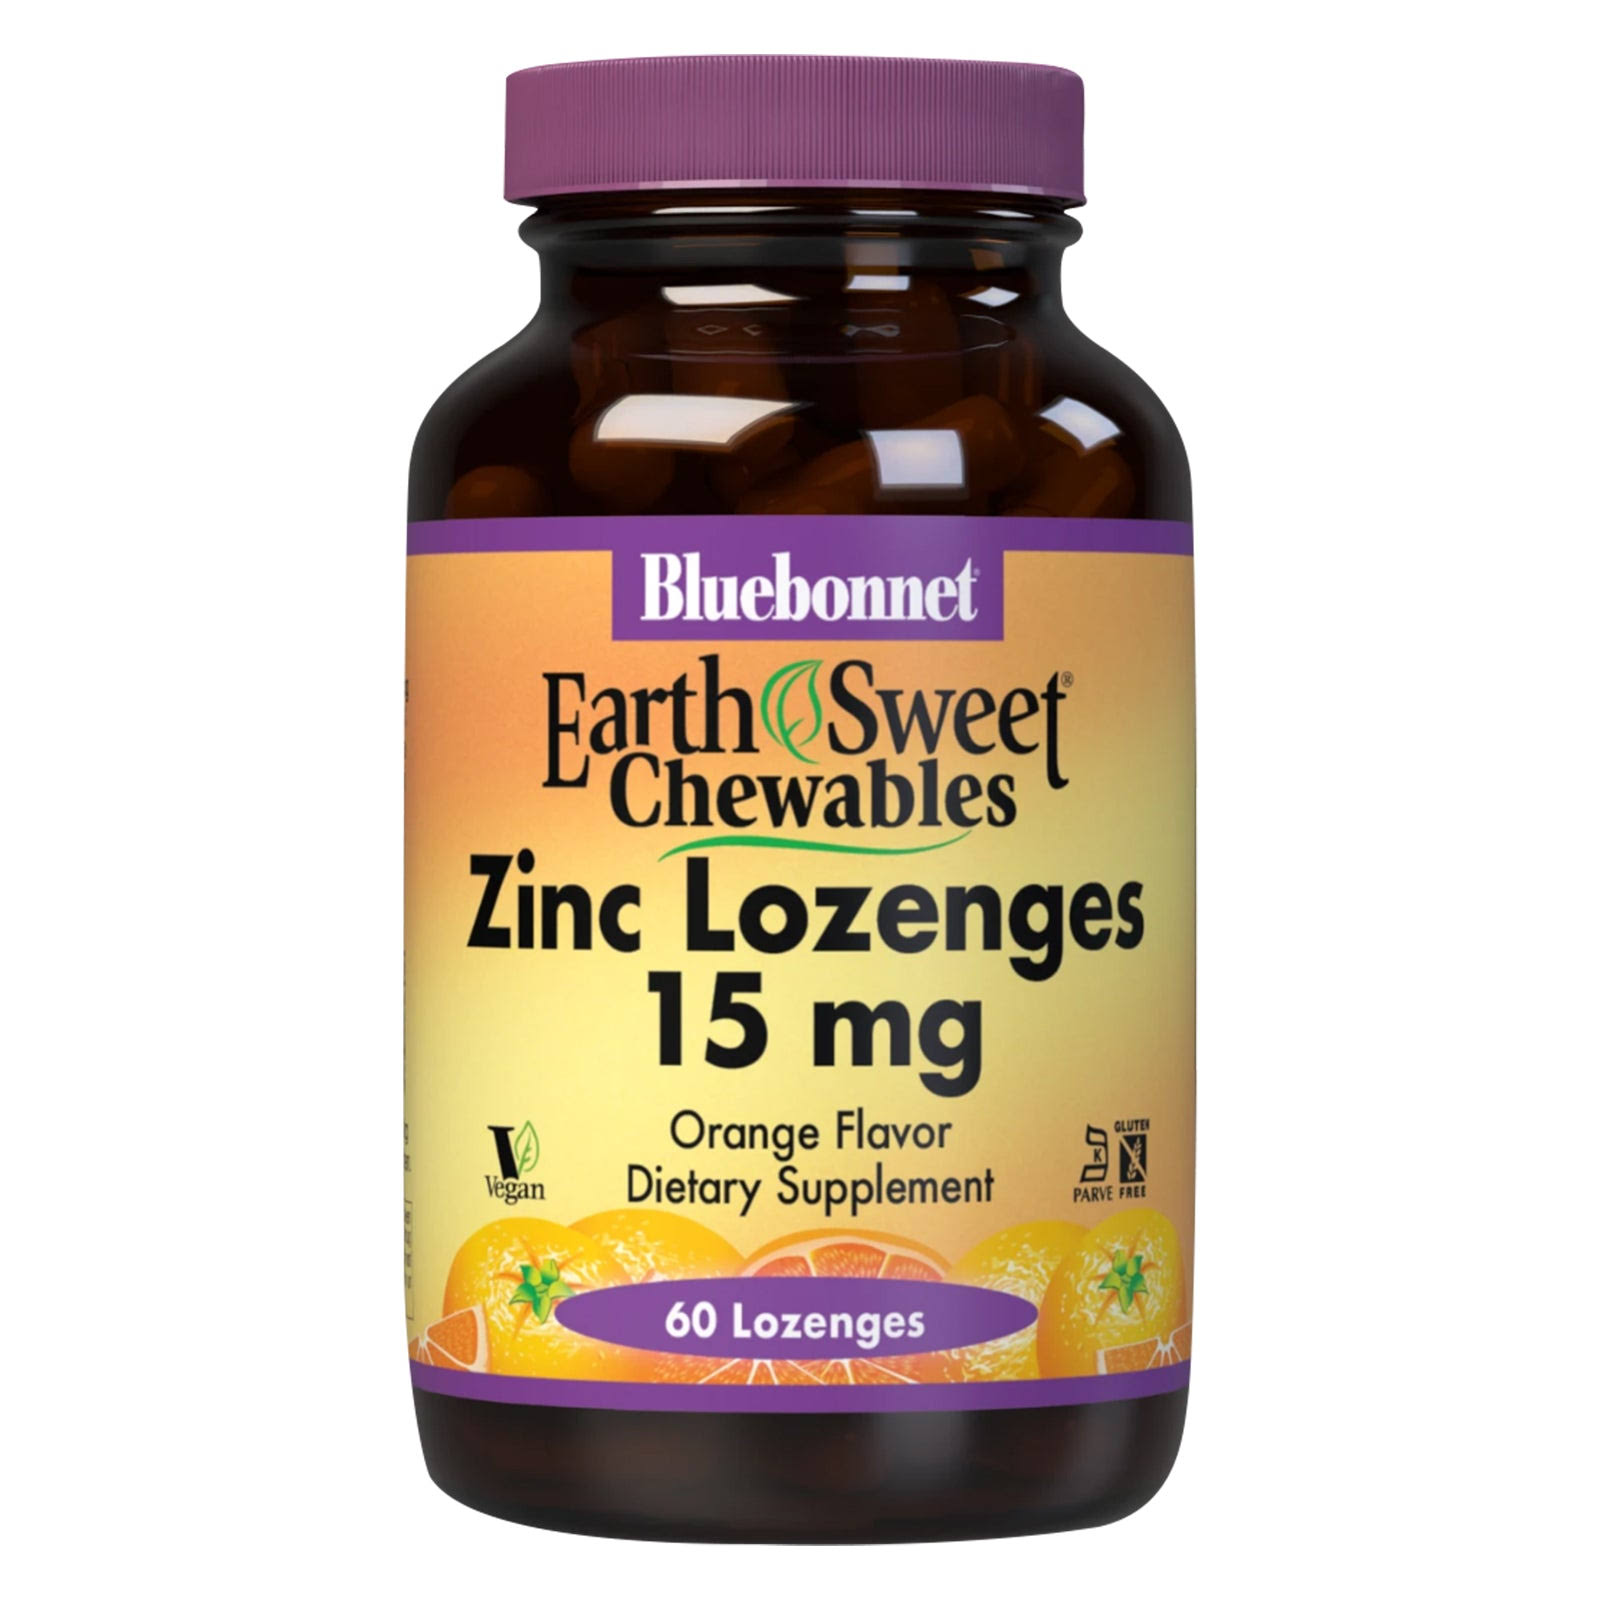 Bluebonnet Earth Sweet Zinc Lozenges - Orange Flavor, 60 Lozenges